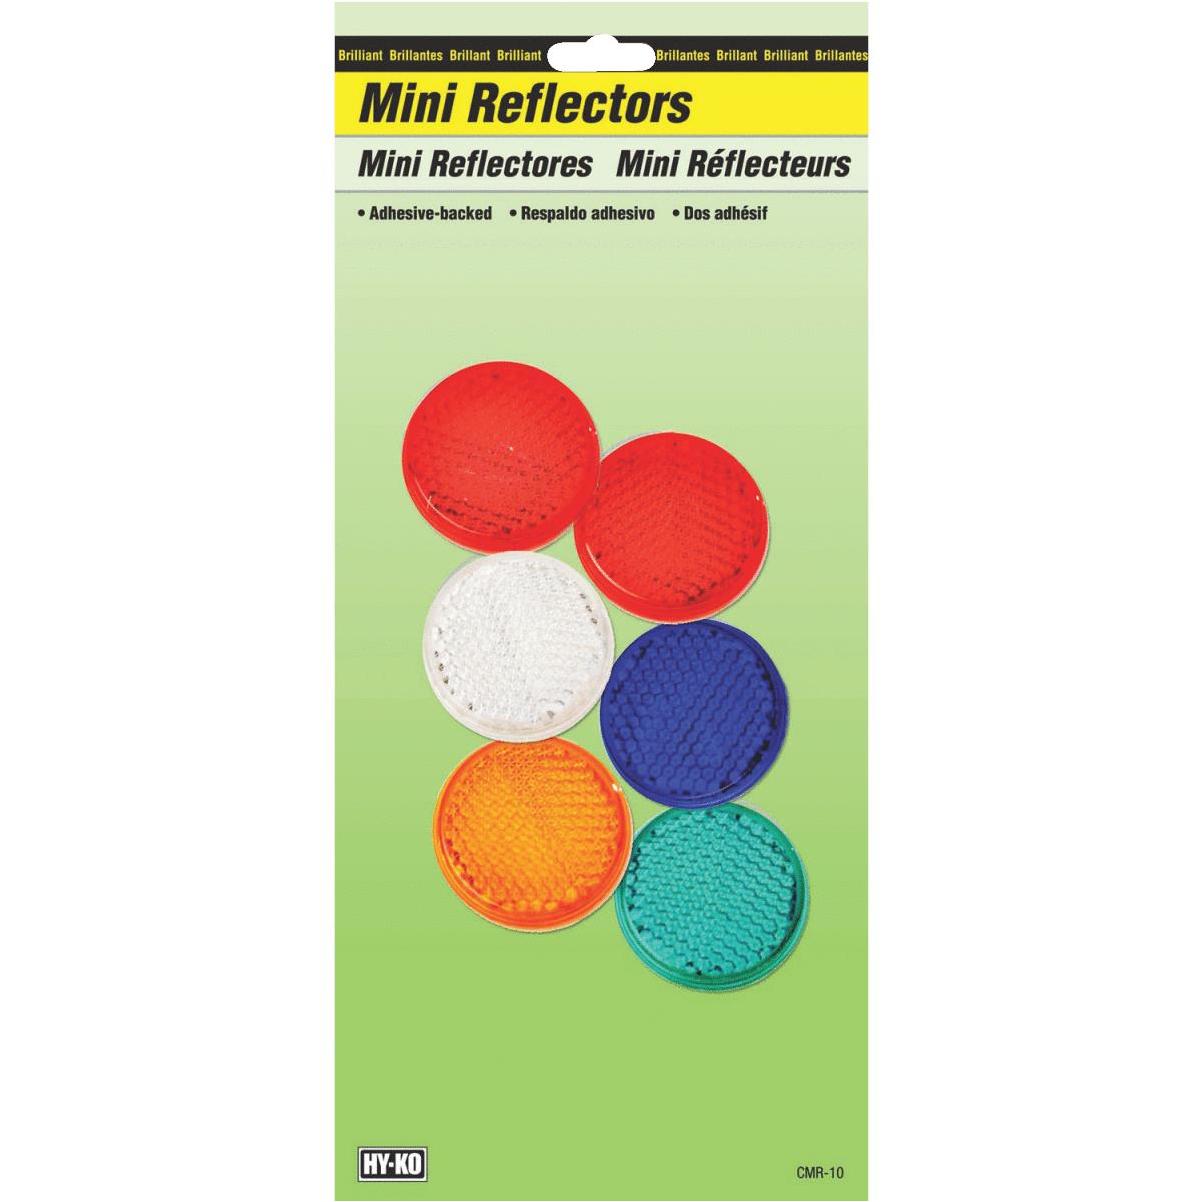 buzón de correo Reflectores Mini 6pk Hy-ko Adhesivo con respaldo Lote de 2 Barandilla de Correos Paq Nuevo